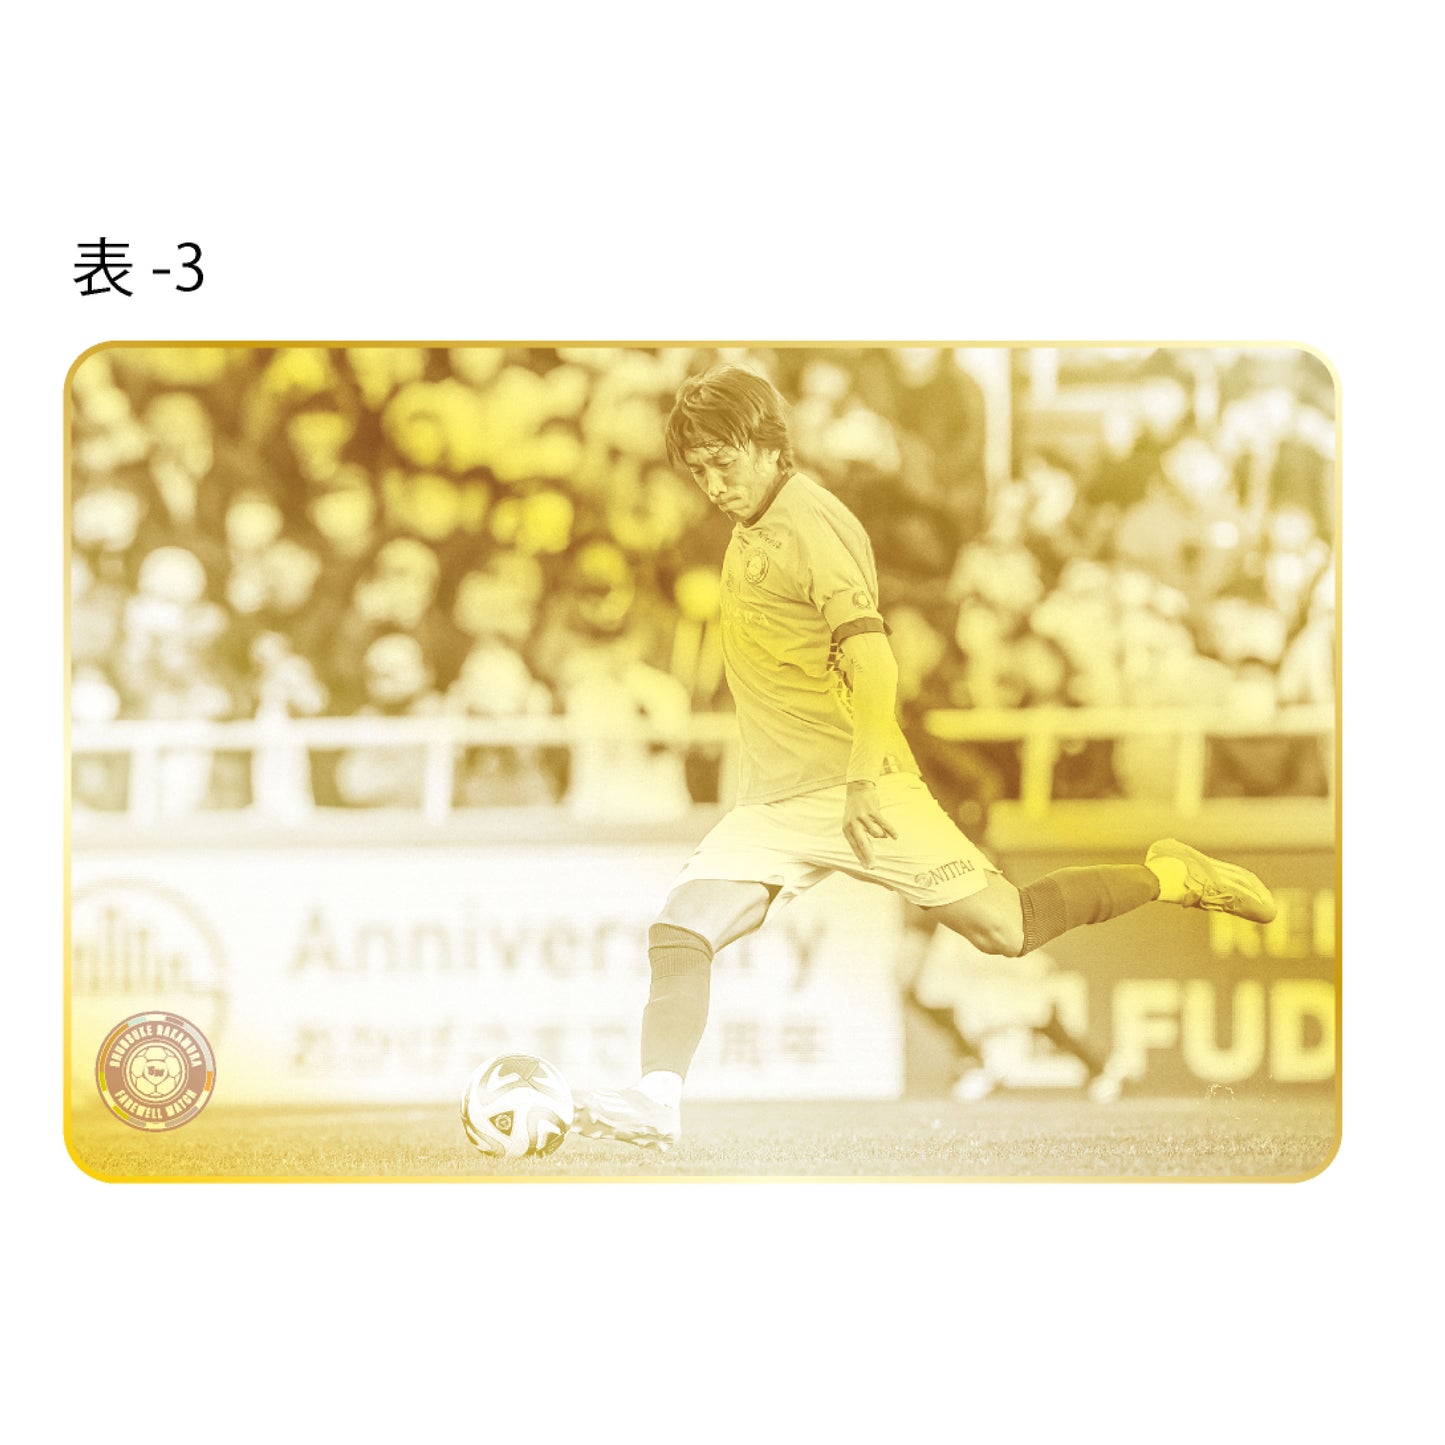 中村俊輔引退試合記念メタルカード(フォト)